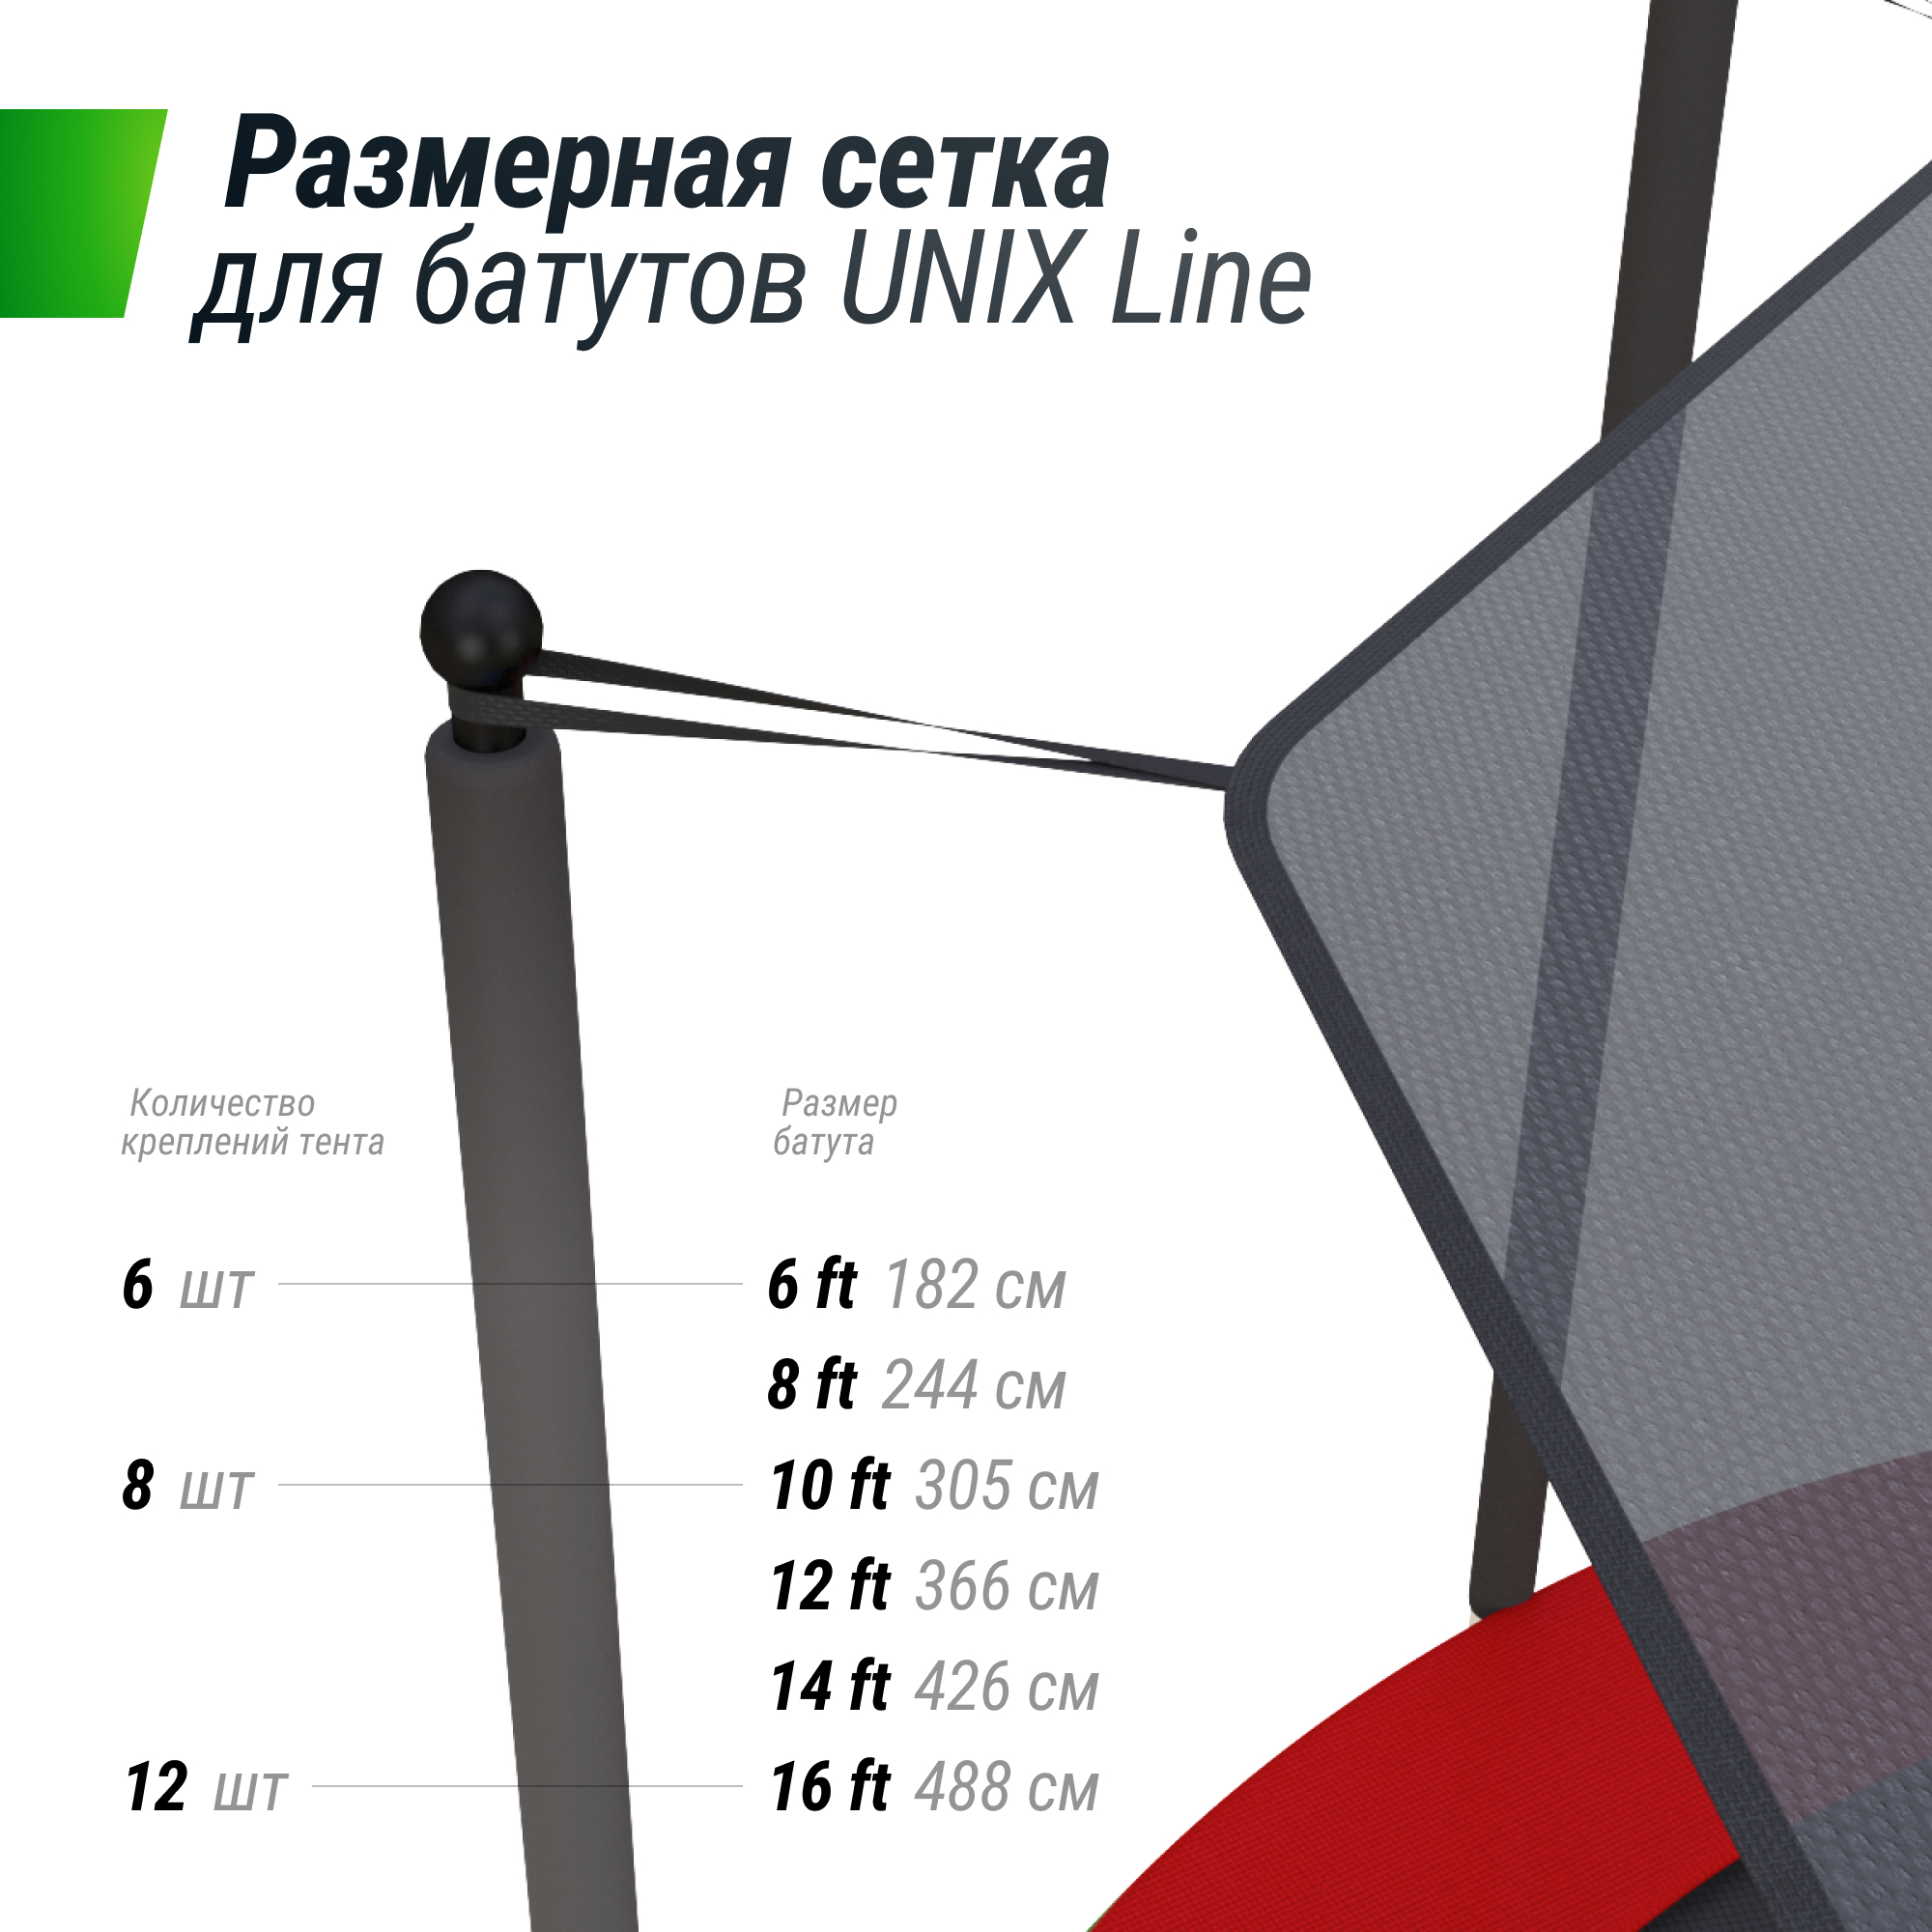 Солнцезащитный тент UNIX Line 244 см (8 ft) - 5 